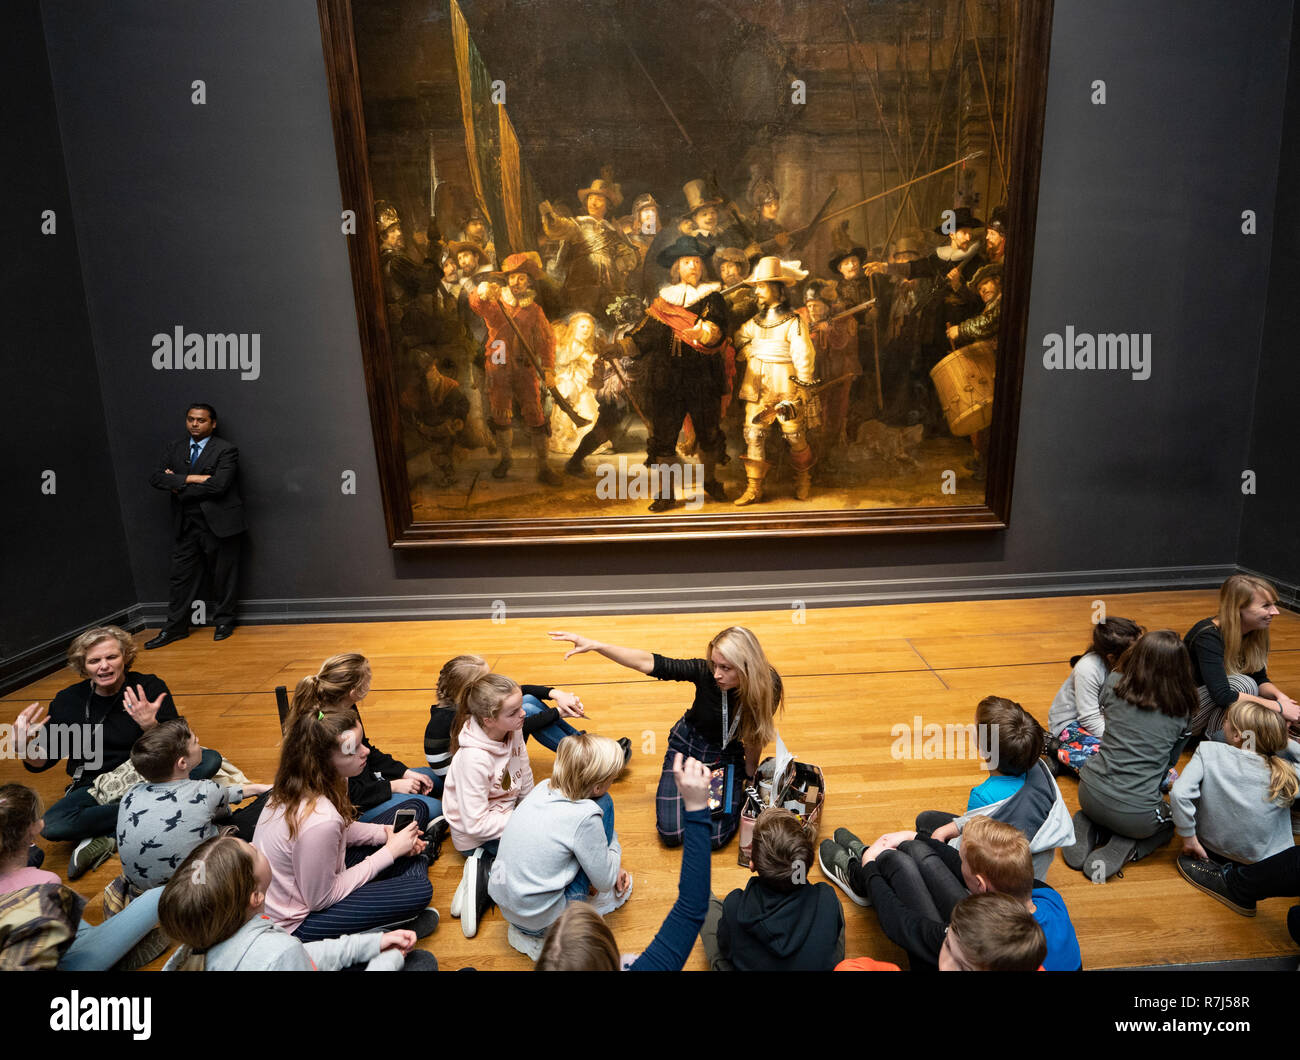 Les visiteurs à l'écoliers nuit regarder la peinture de Rembrandt van Rijn au Rijksmuseum à Amsterdam, Pays-Bas Banque D'Images